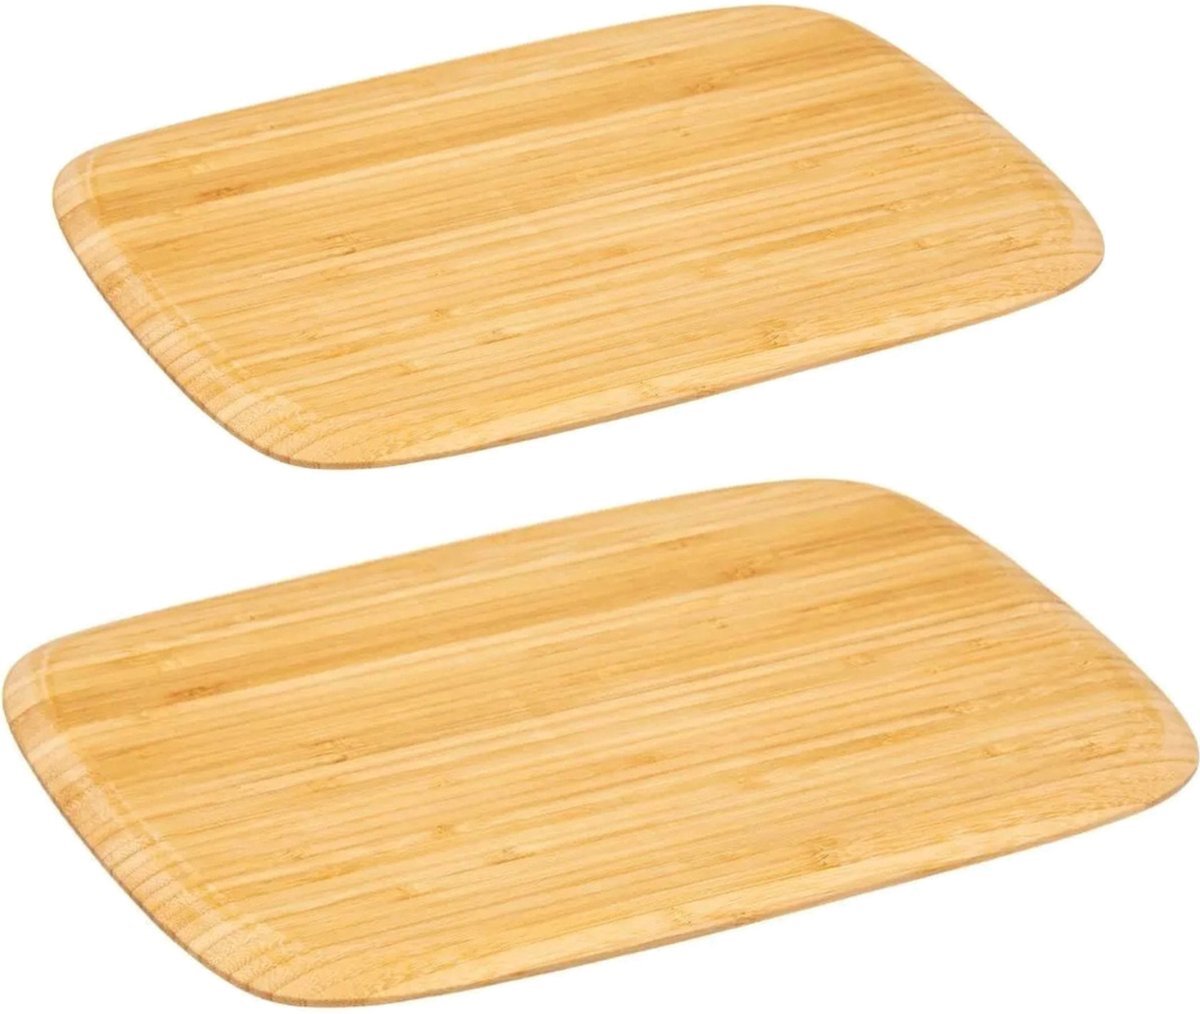 5five Keuken snijplanken set van 2 stuks rechthoek 40 x 30 en 28 x 25 cm van bamboe hout